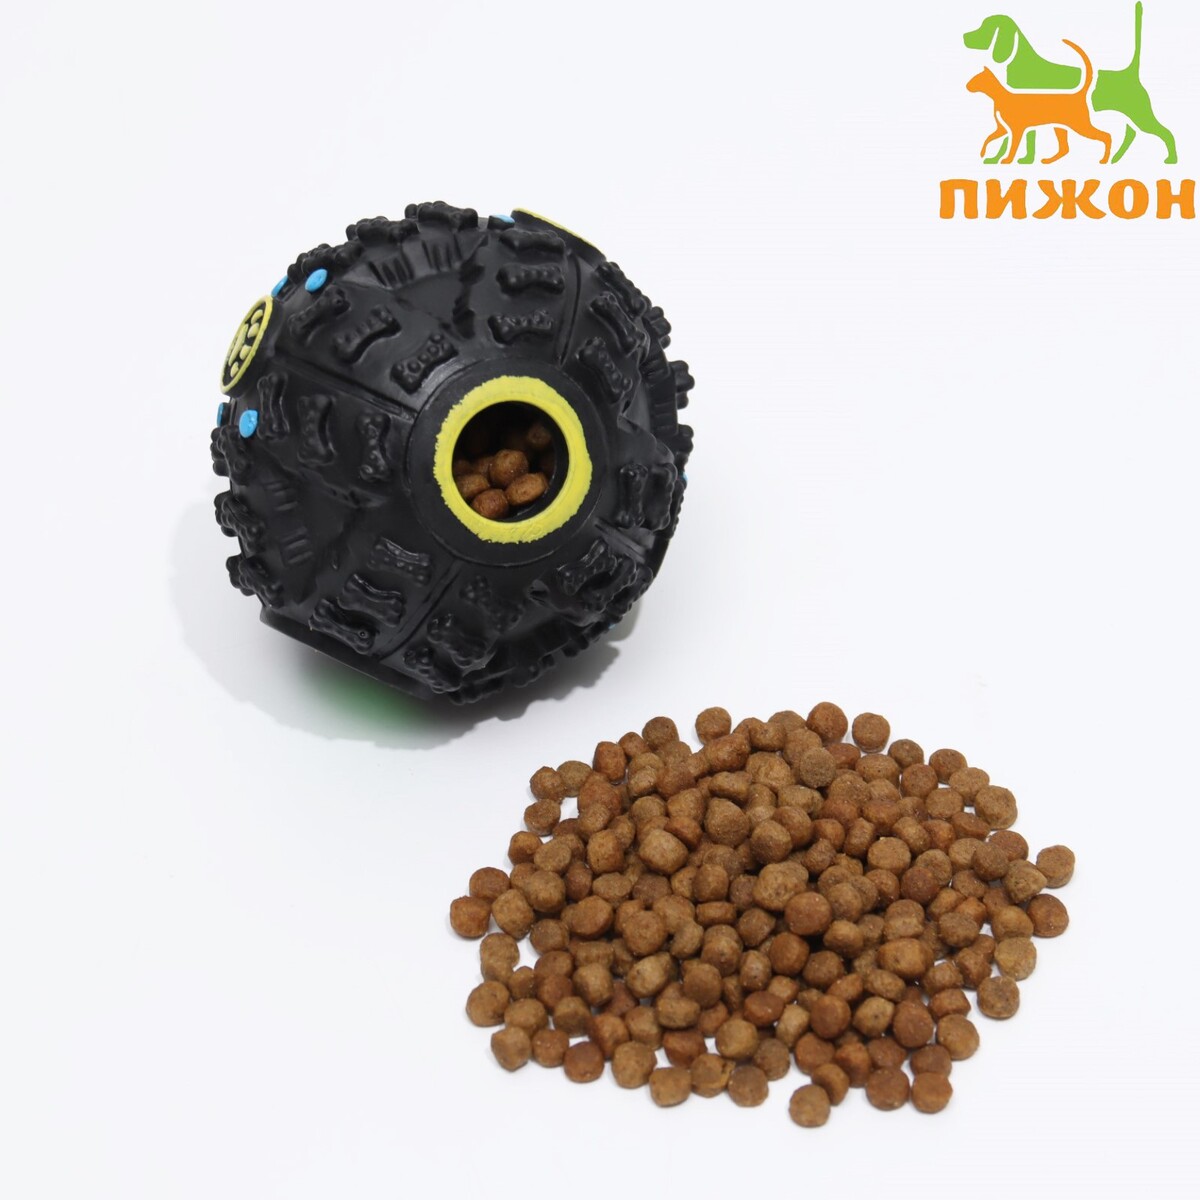 Квакающий мяч для собак, жёсткий, 7,5 см, чёрный, Пижон